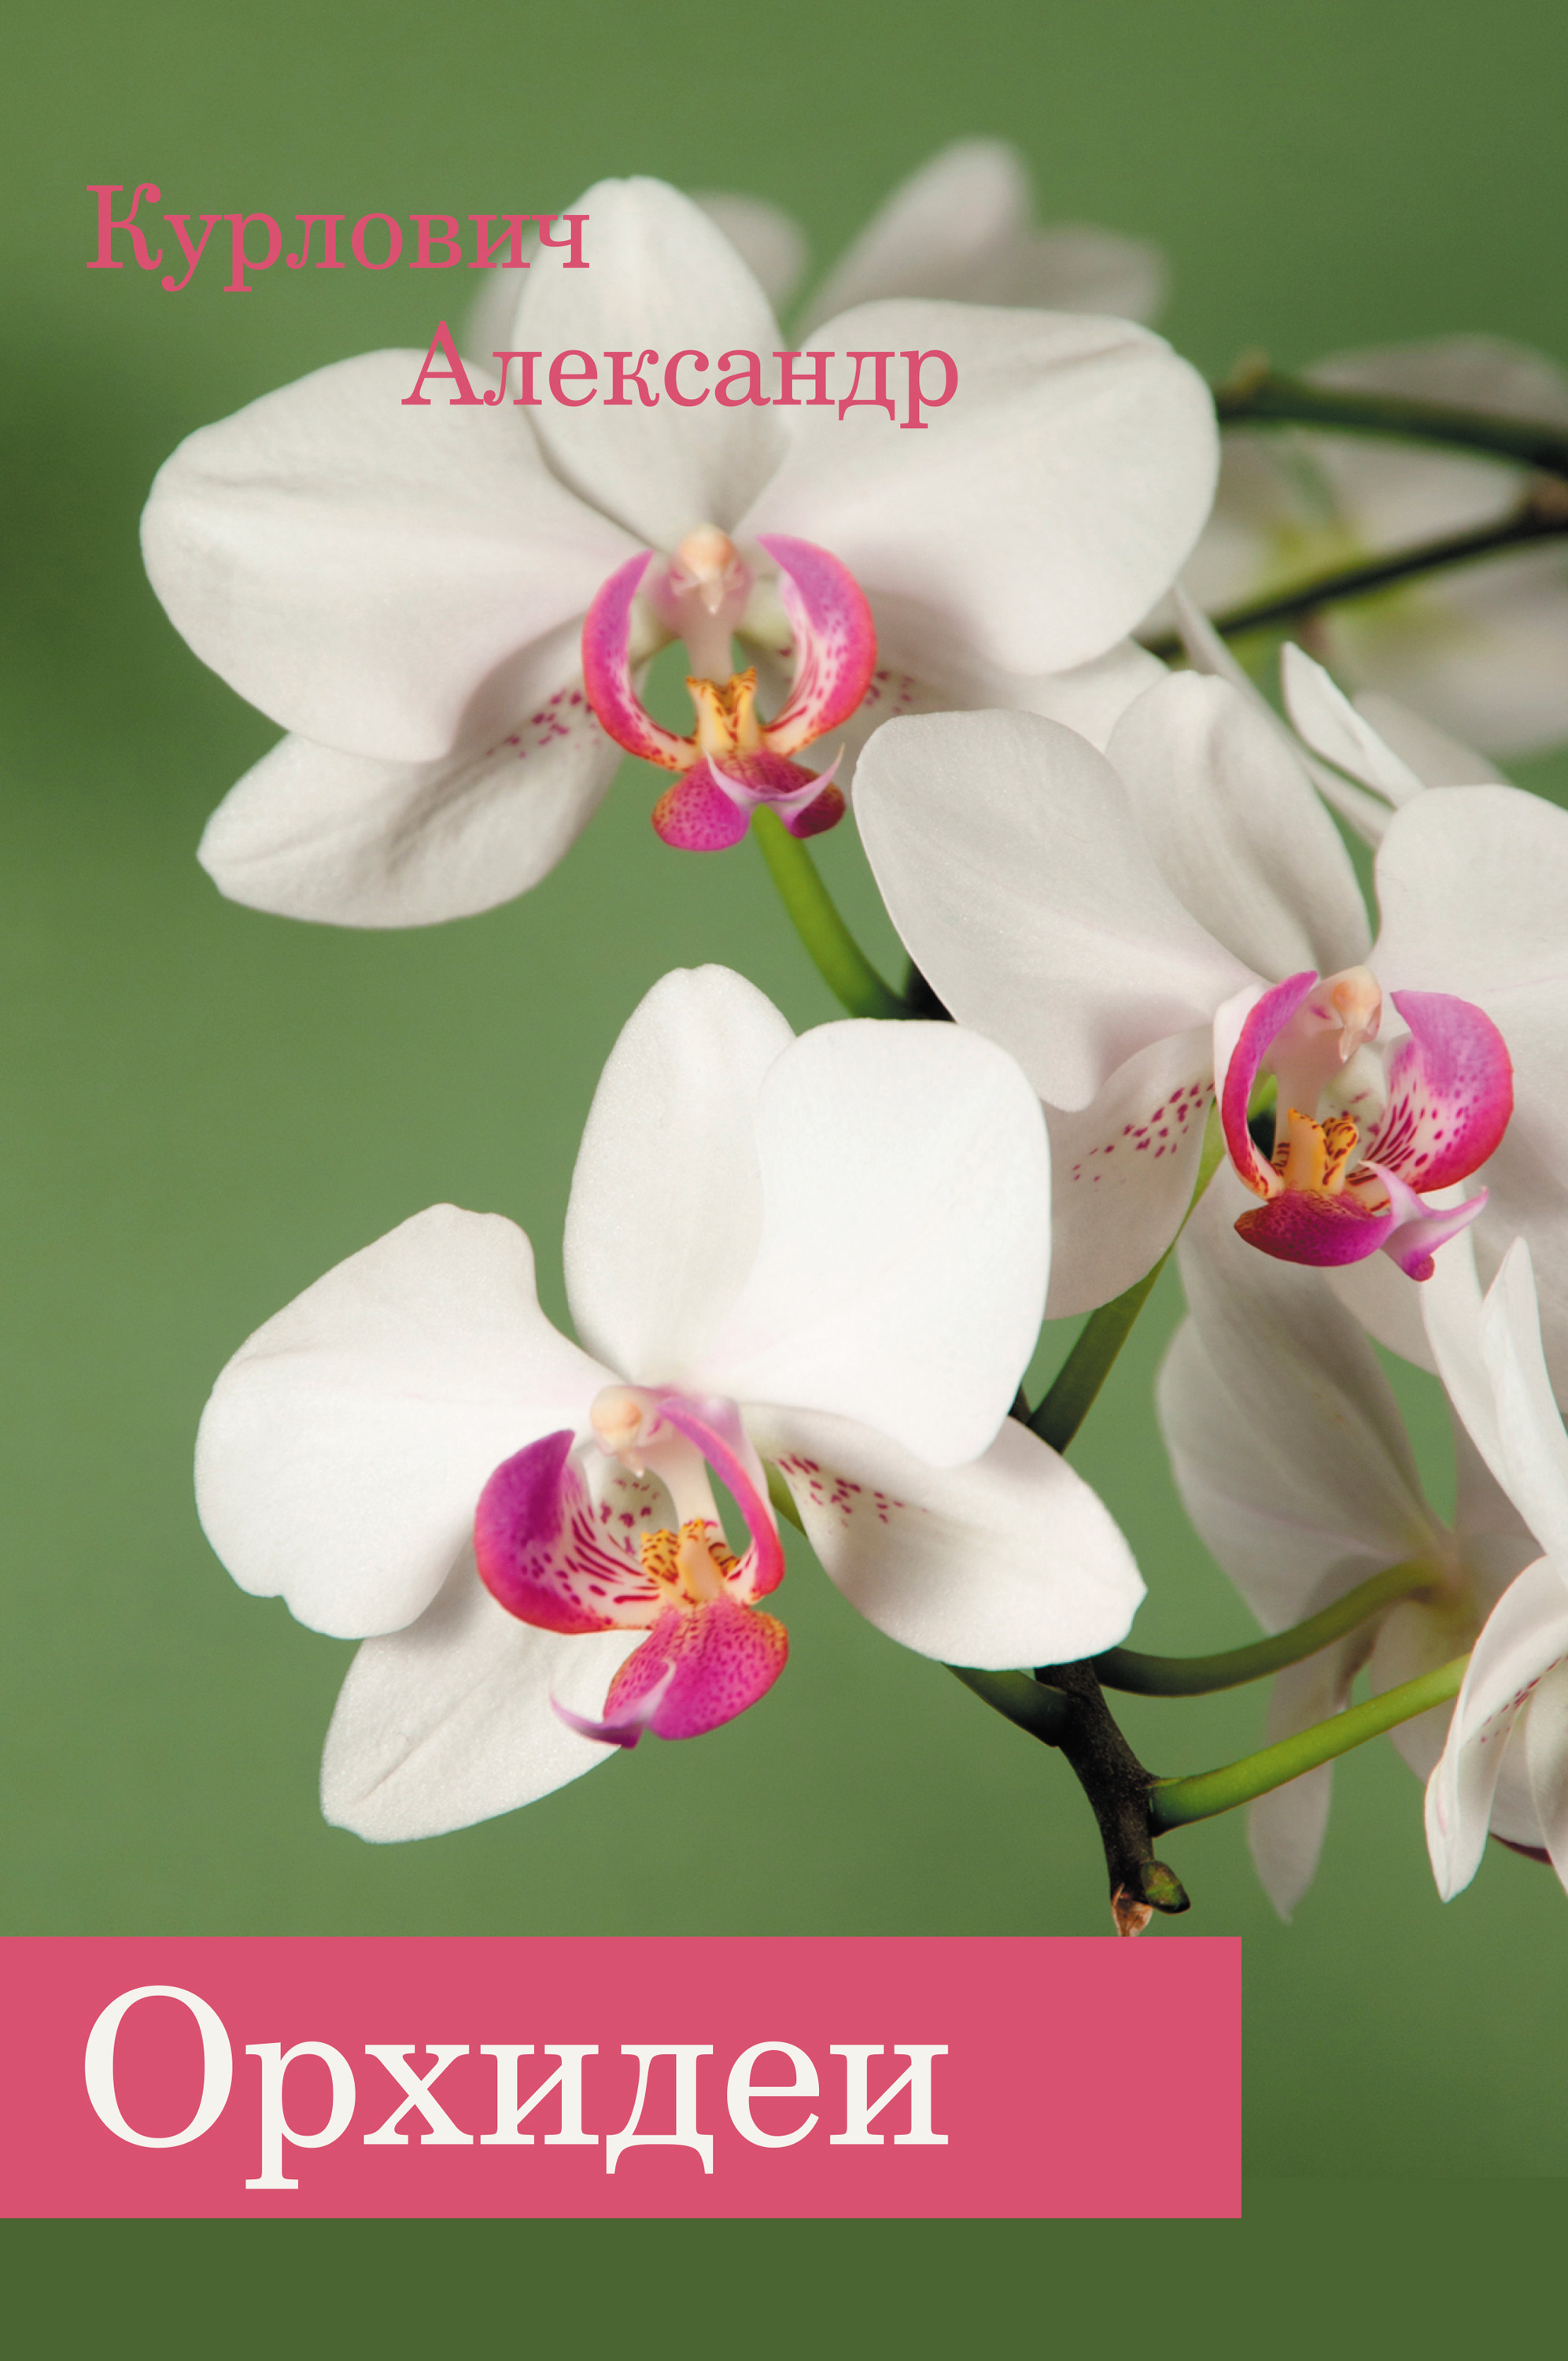 Книга Орхидеи из серии , созданная Александр Курлович, может относится к жанру Хобби, Ремесла. Стоимость электронной книги Орхидеи с идентификатором 26727301 составляет 79.99 руб.